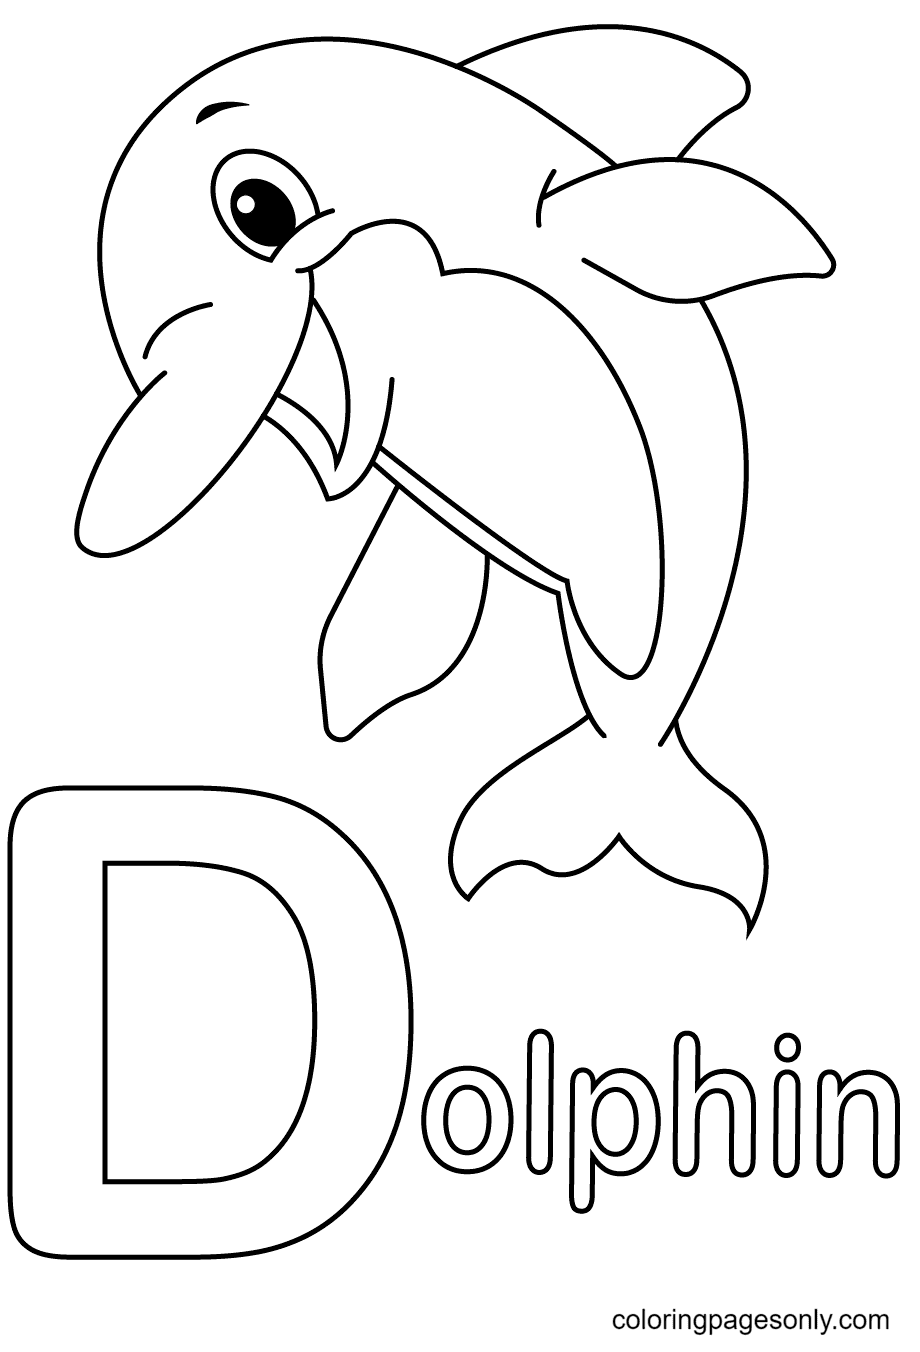 La lettera D sta per Dolphin dalla lettera D